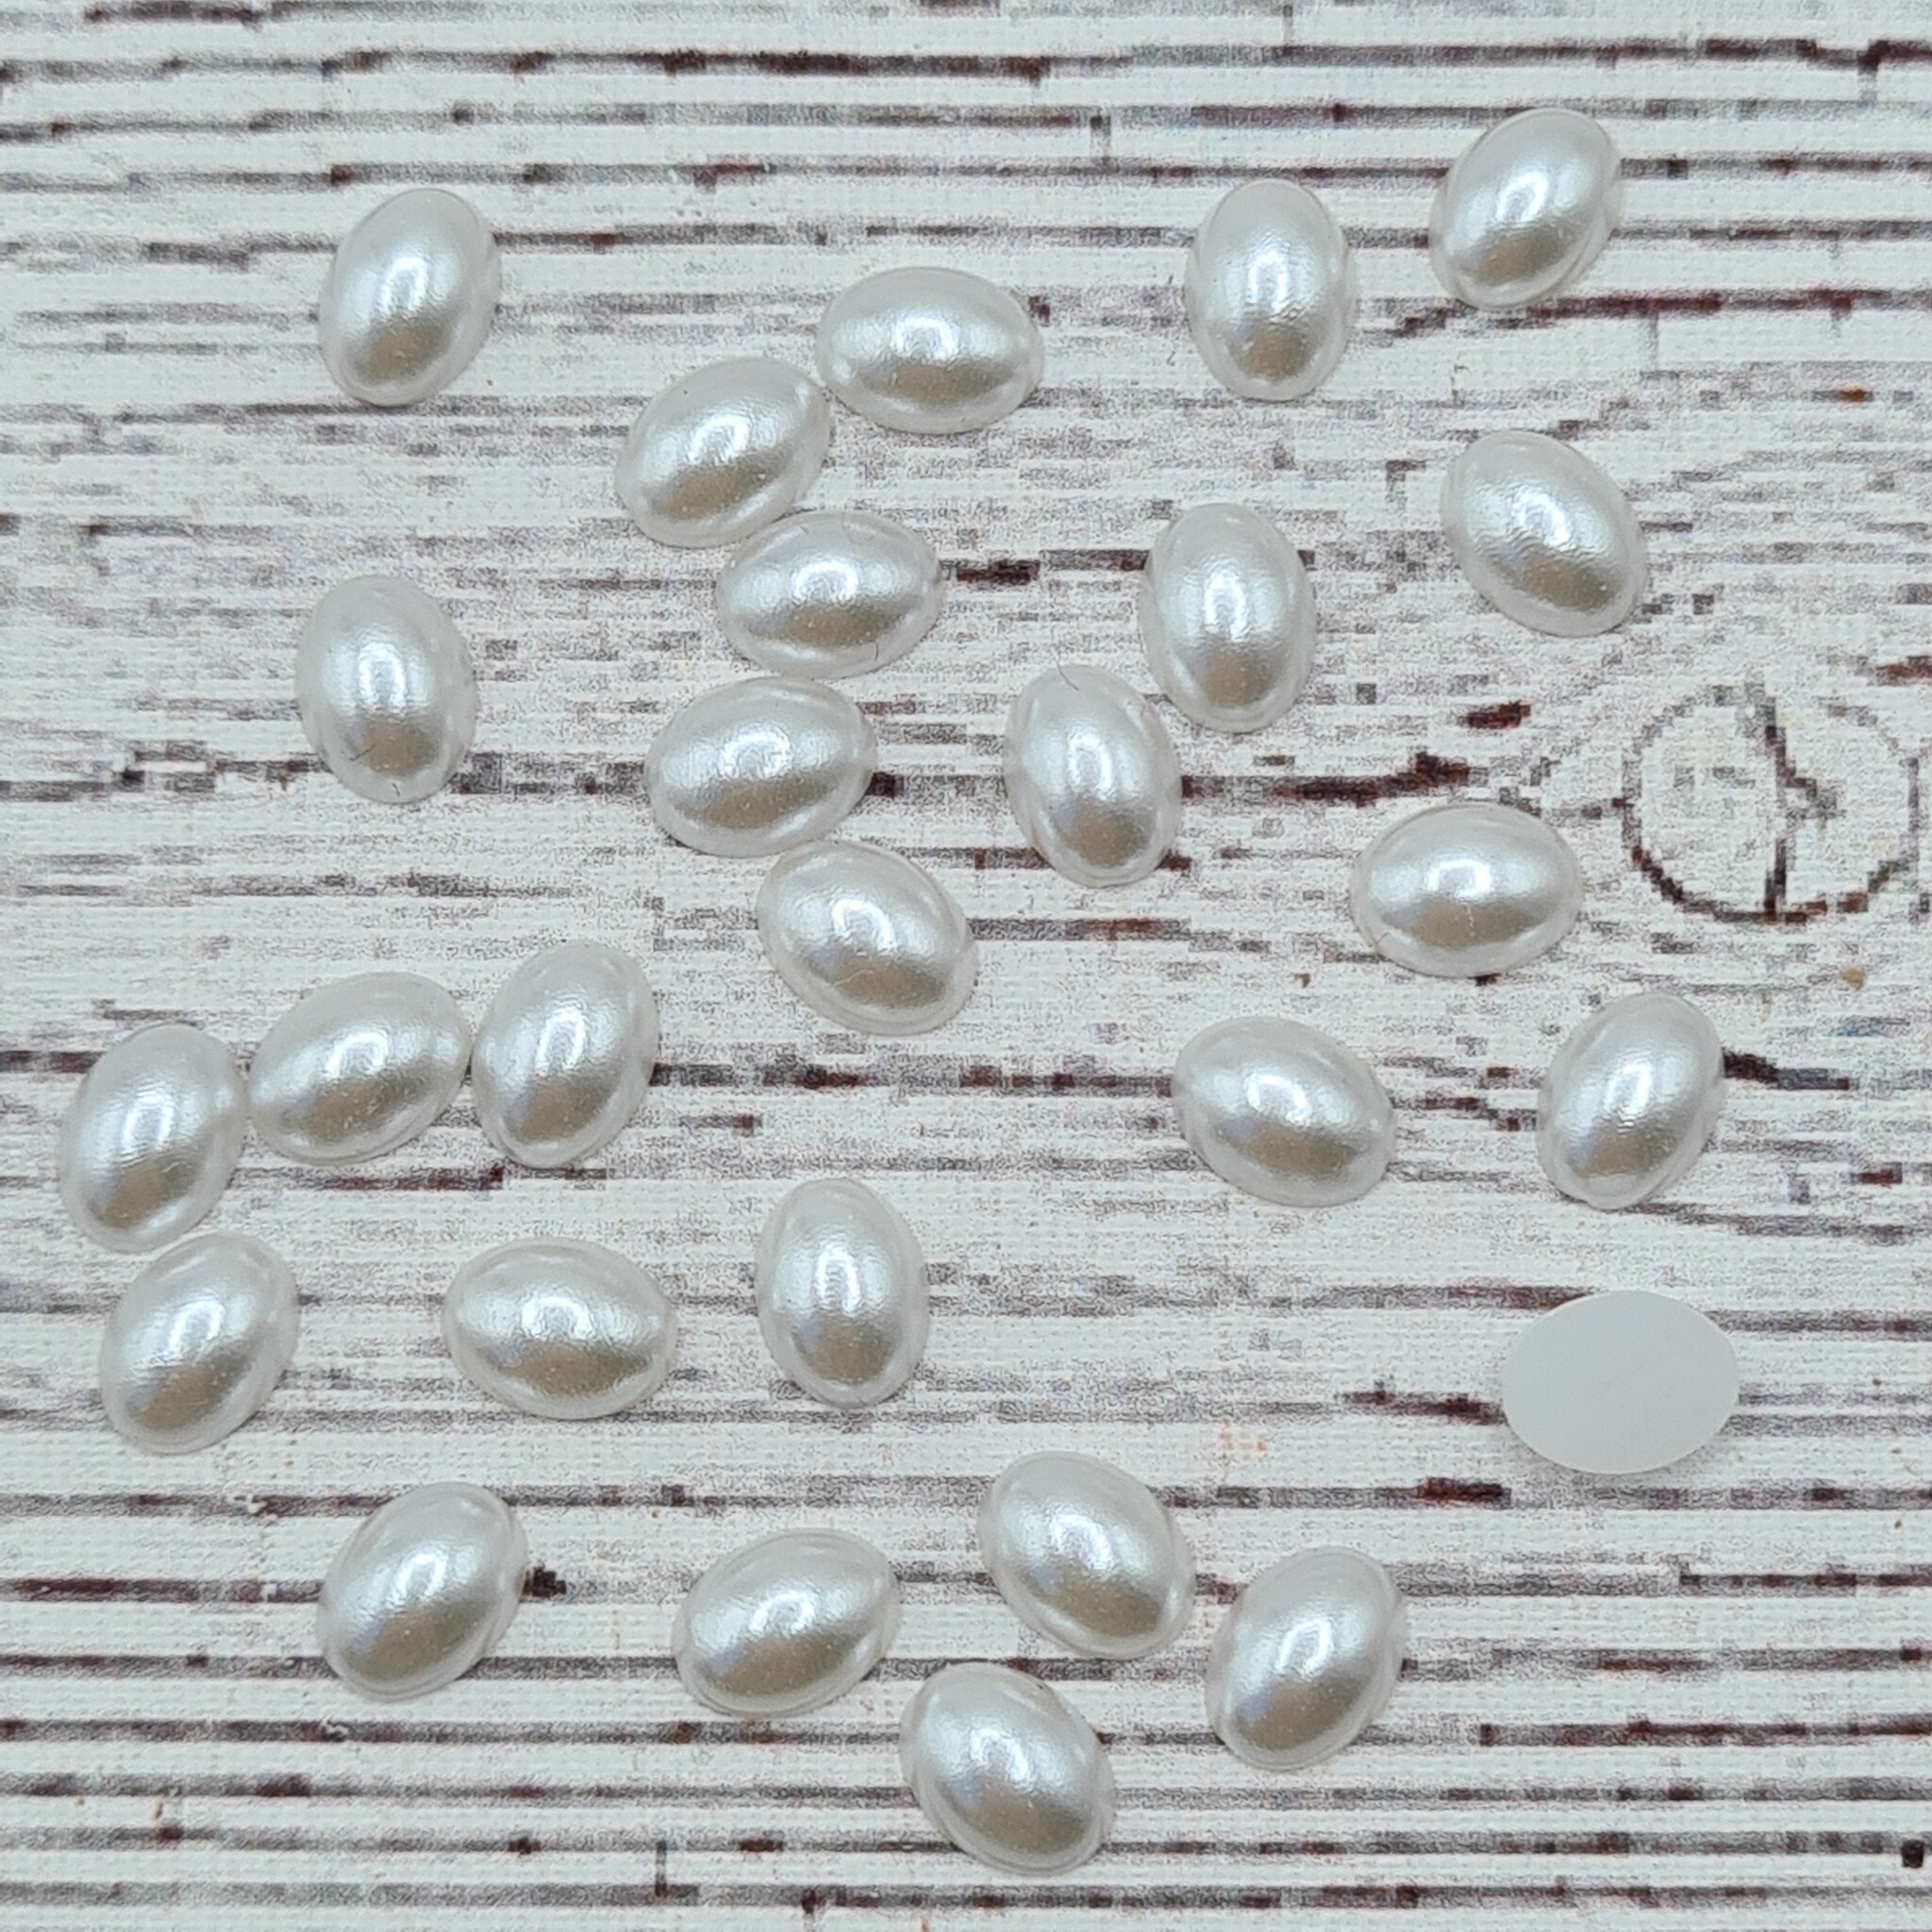 Oval halv pärla, Vit, 0,8 cm. 100st.